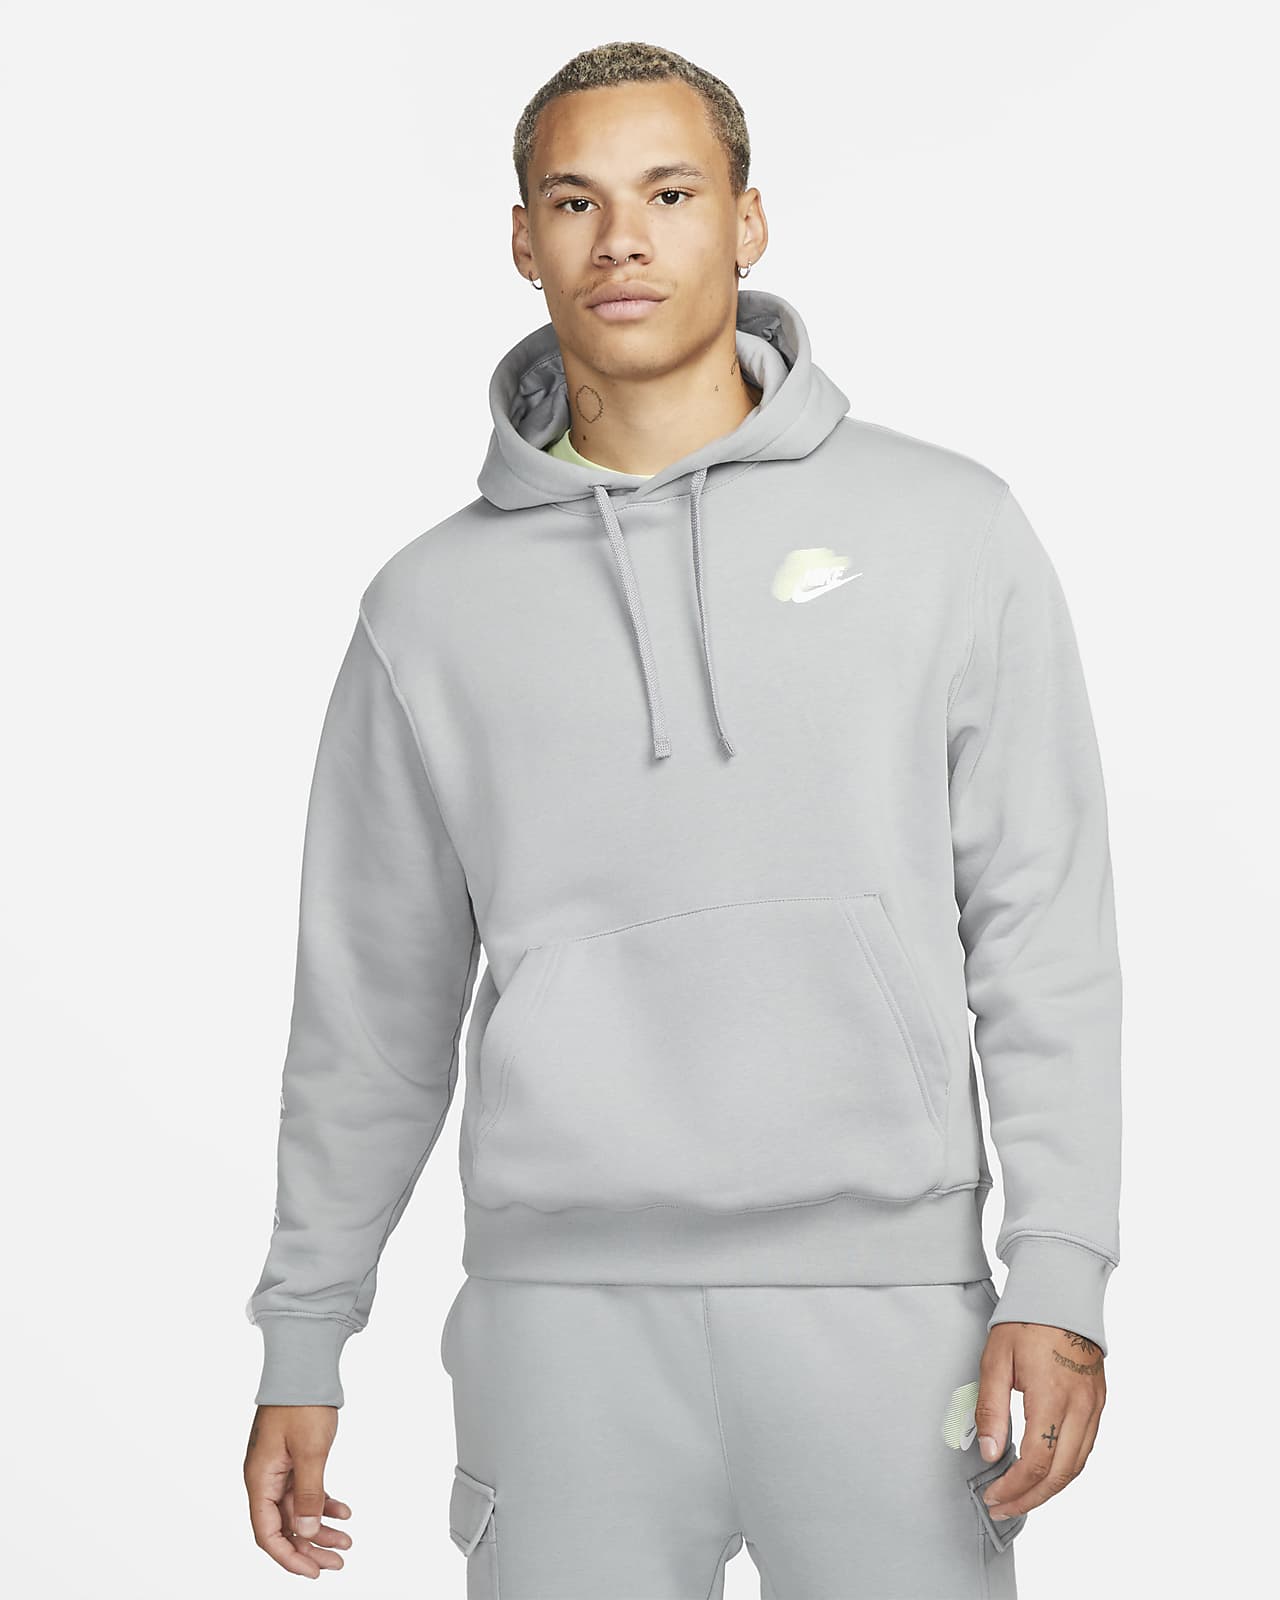 Nike Sportswear Standard Issue Men's Fleece Pullover Hoodie. Nike